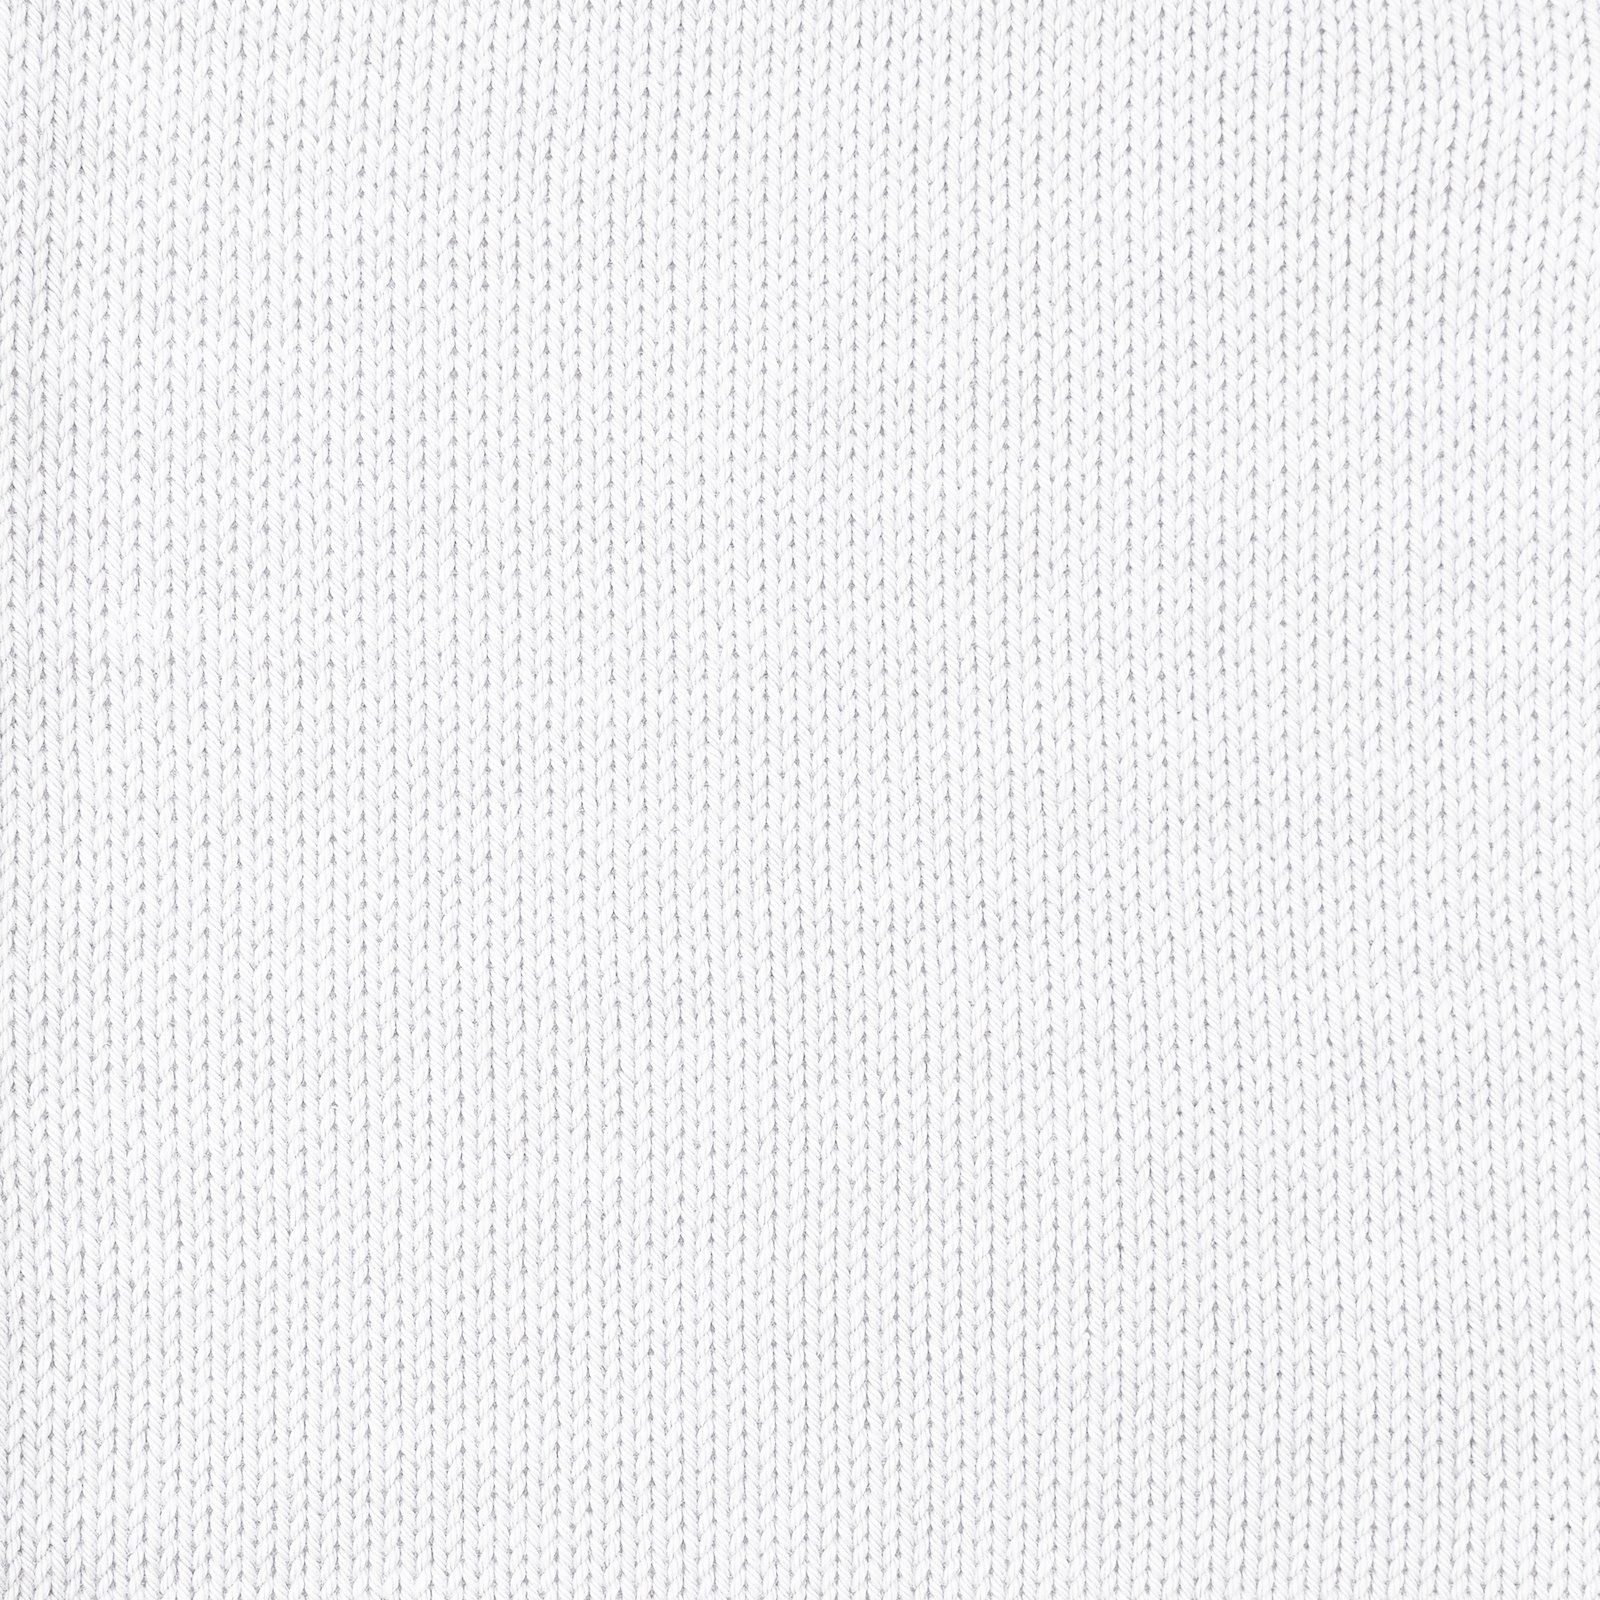 FRAYA, 100% cotton yarn "Colourful", white 90060001_sskit